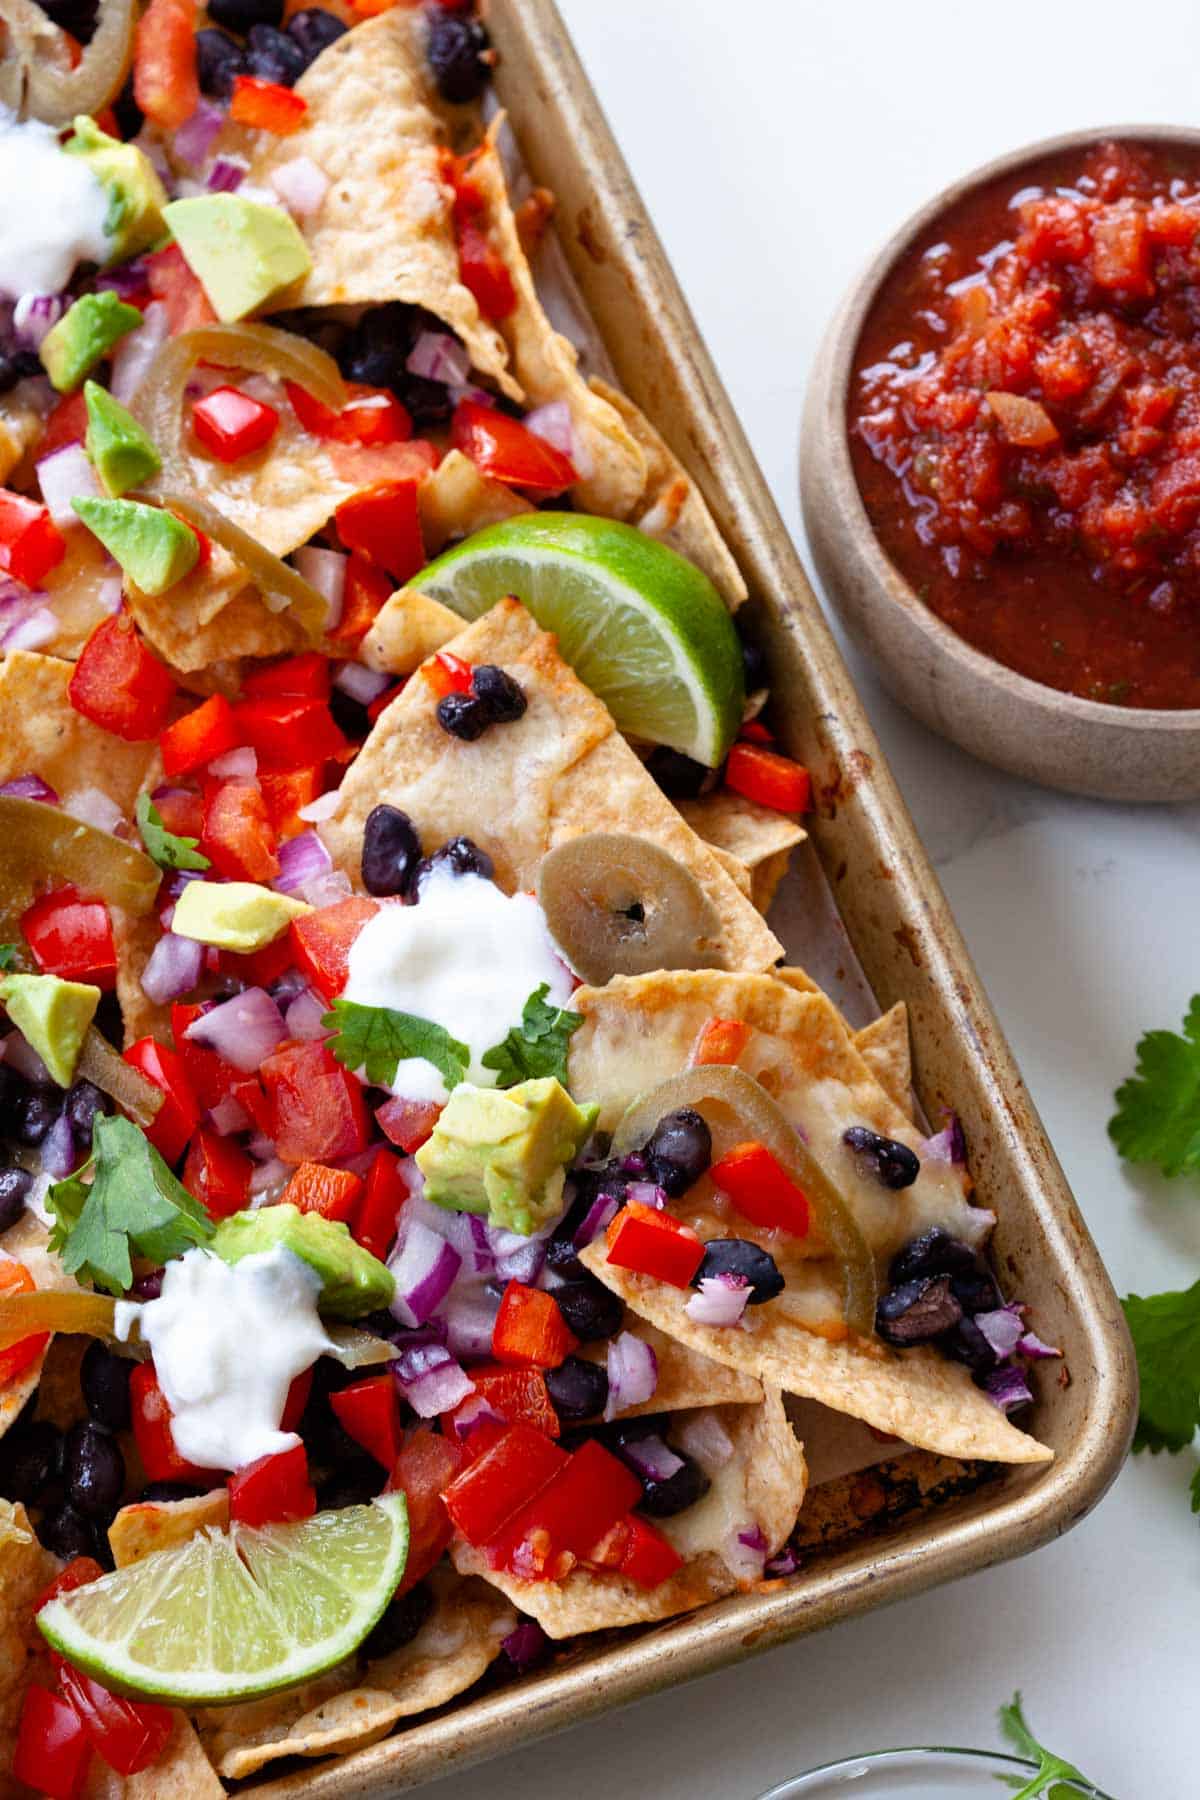 cerrar nachos vegetarianos con coberturas como aguacate, limas, cilantro y tazón de salsa al lado